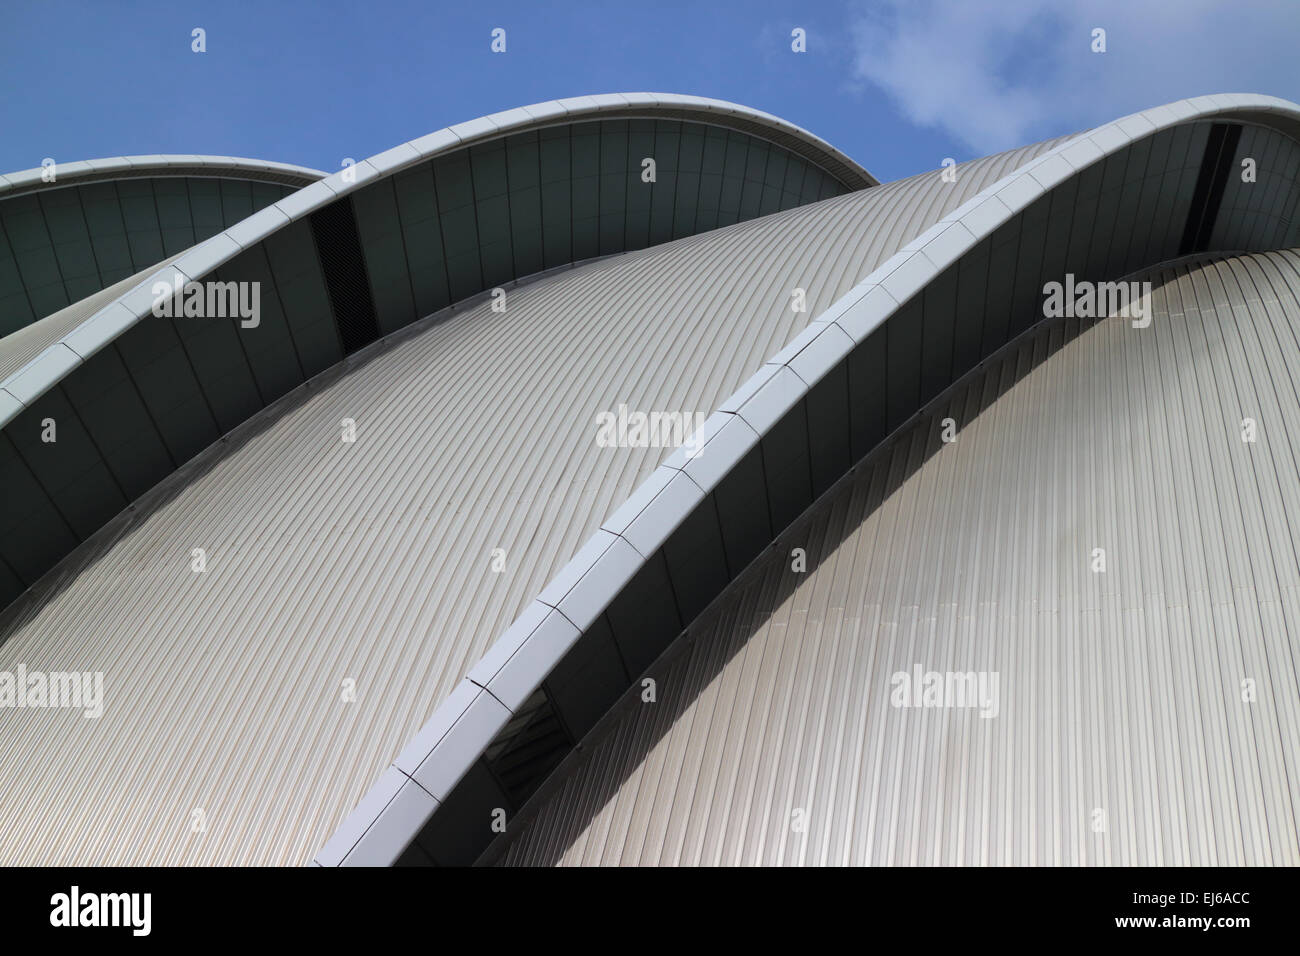 Architektur des Clyde Auditorium auf der Secc scottish Exhibition and Conference centre Glasgow Schottland, Vereinigtes Königreich Stockfoto